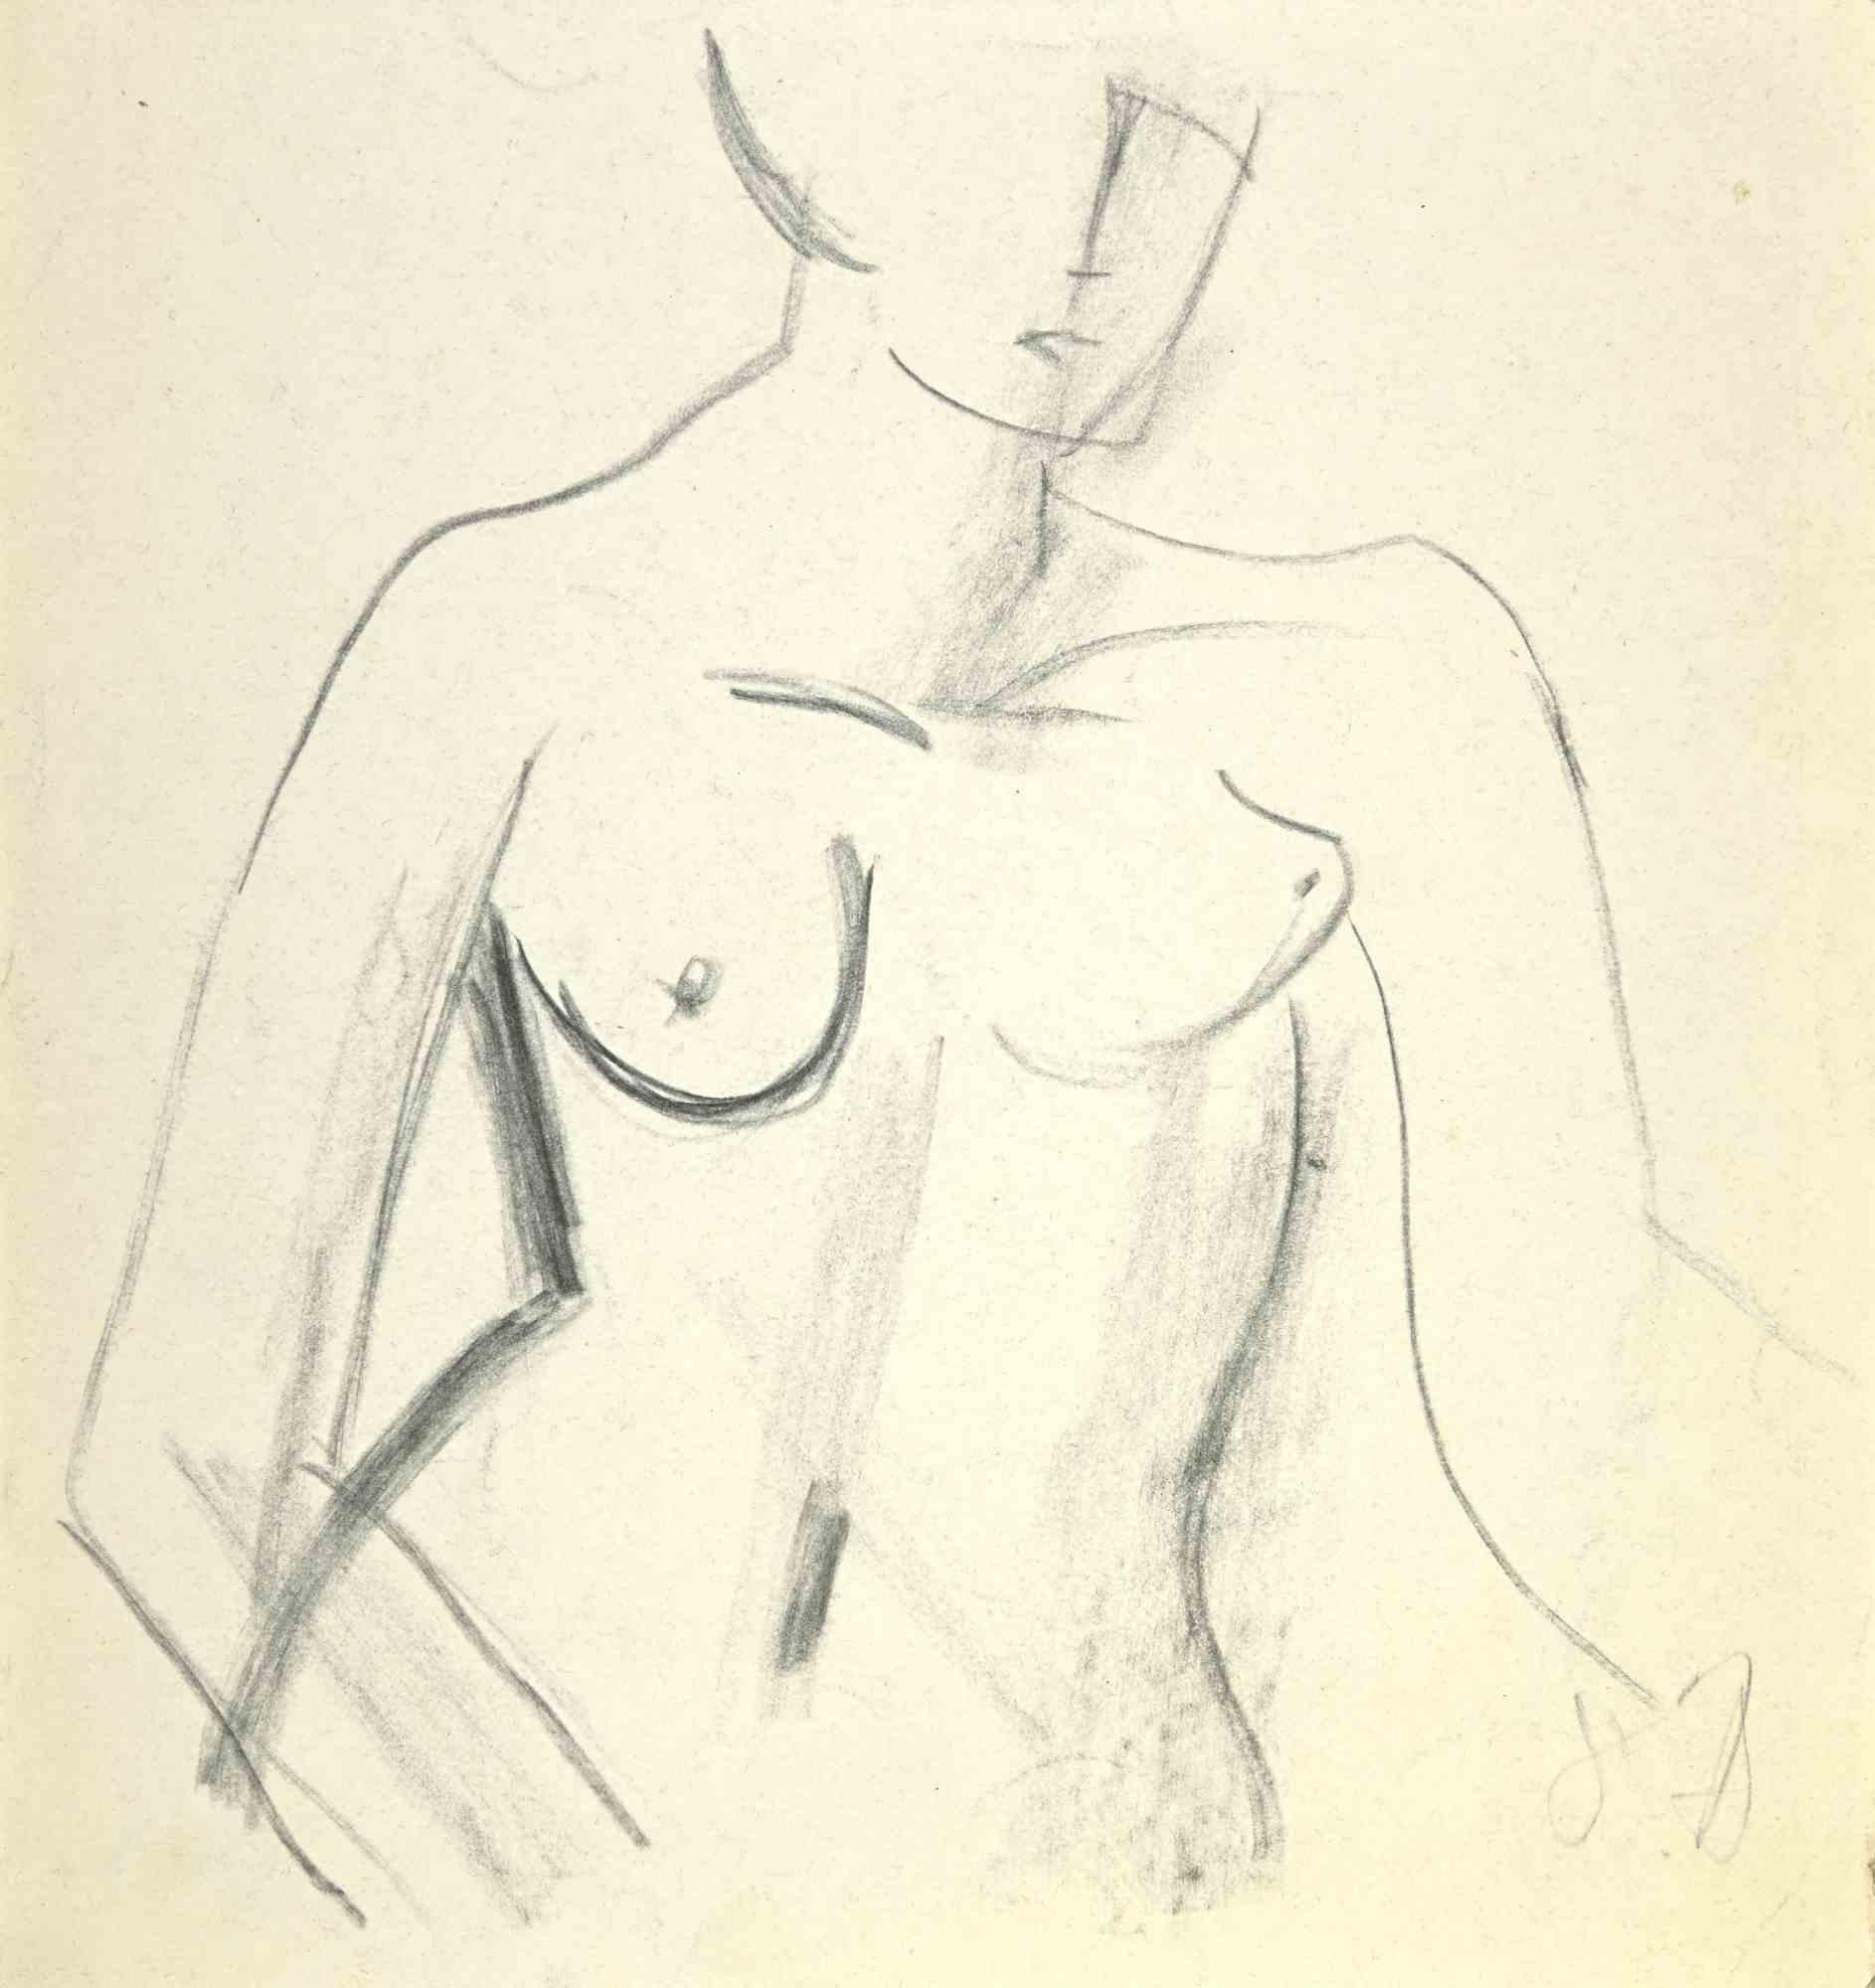 The Nude - Dessin de I. B. Saint-André - Milieu du 20e siècle - Art de Louis Berthomme Saint-Andre